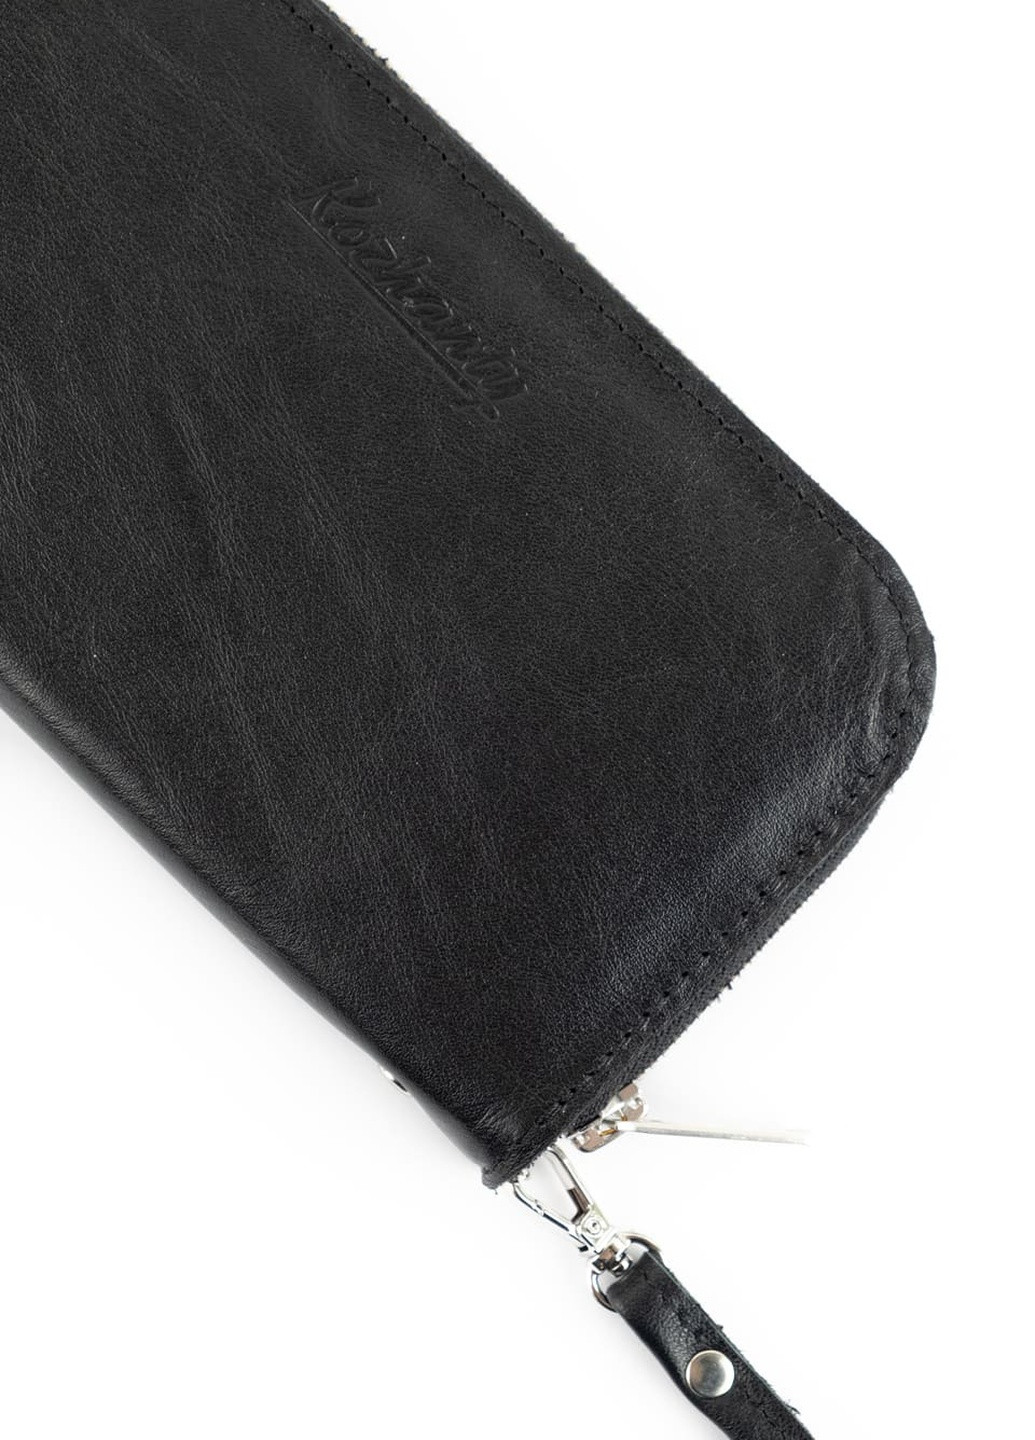 Кожаный портмоне кошелек зиппер на молнии Teo черный Kozhanty (252315370)